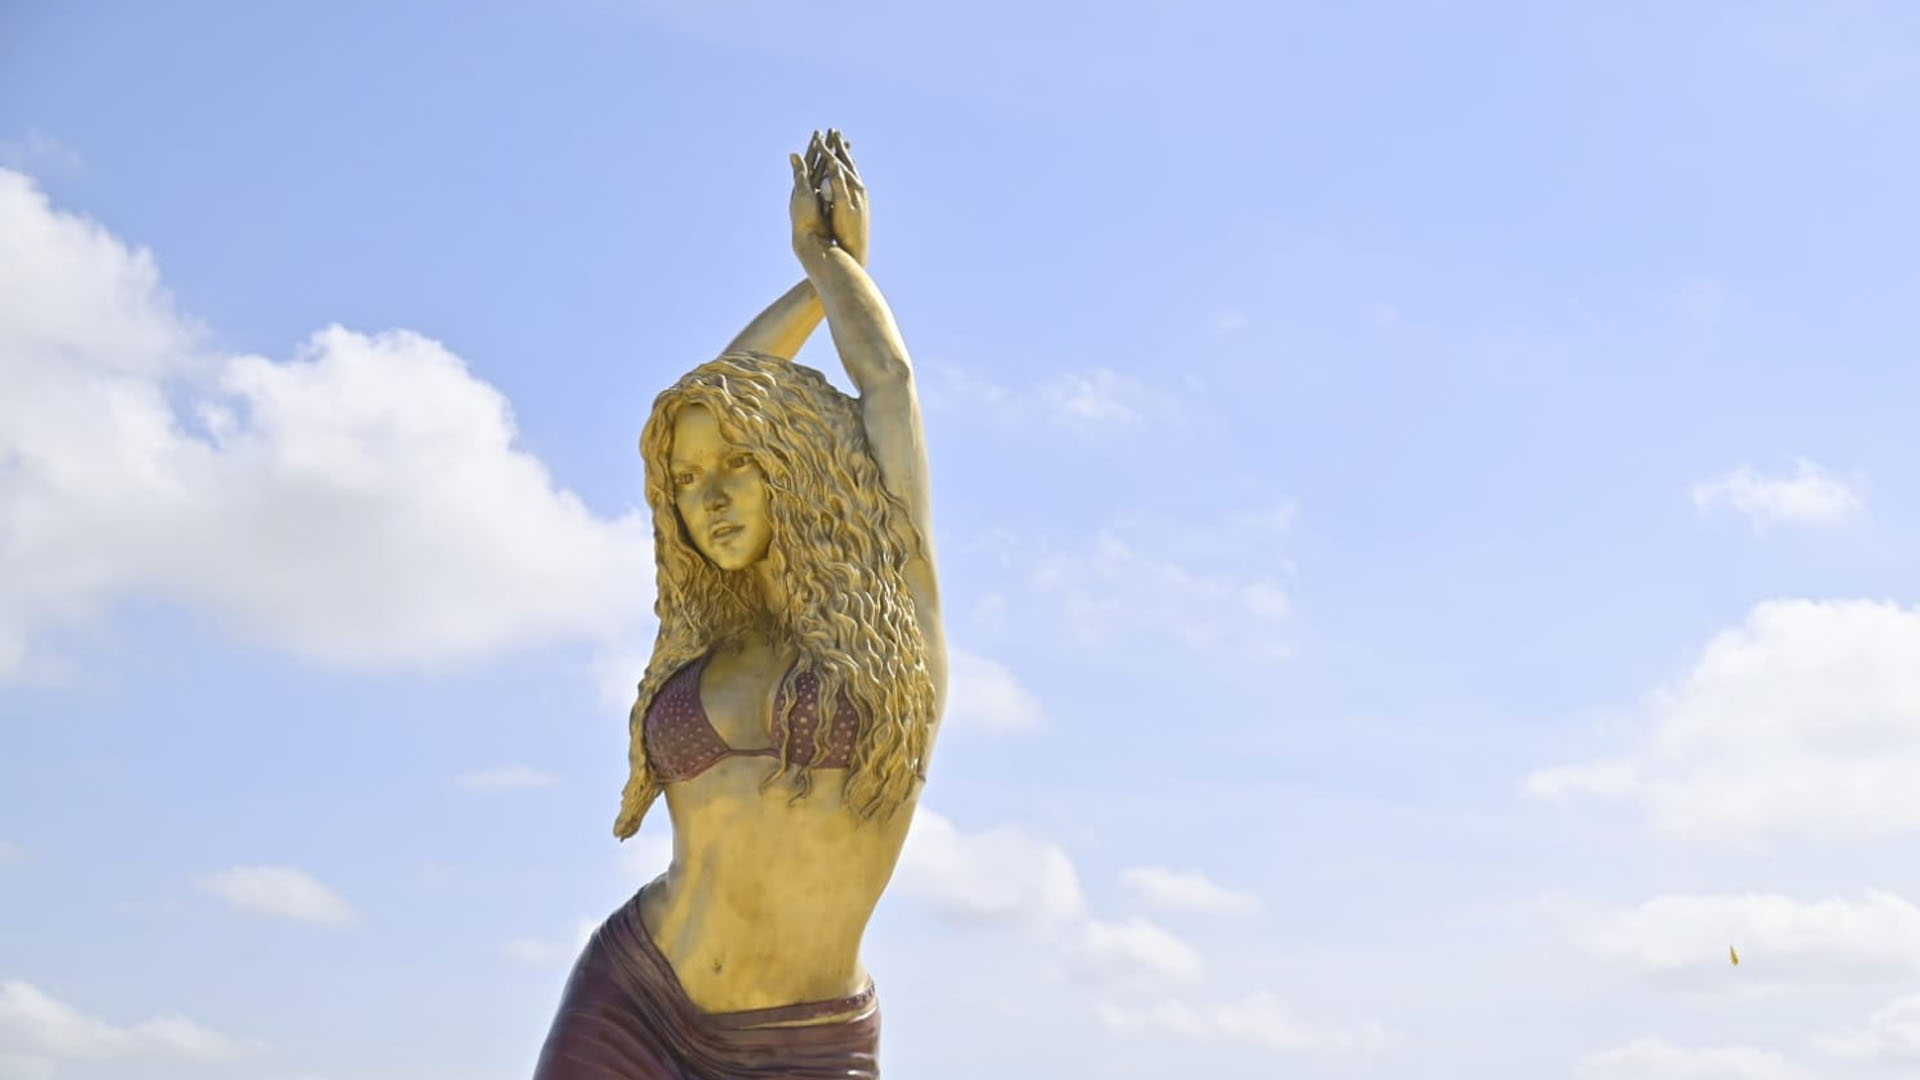 Estatua de Shakira